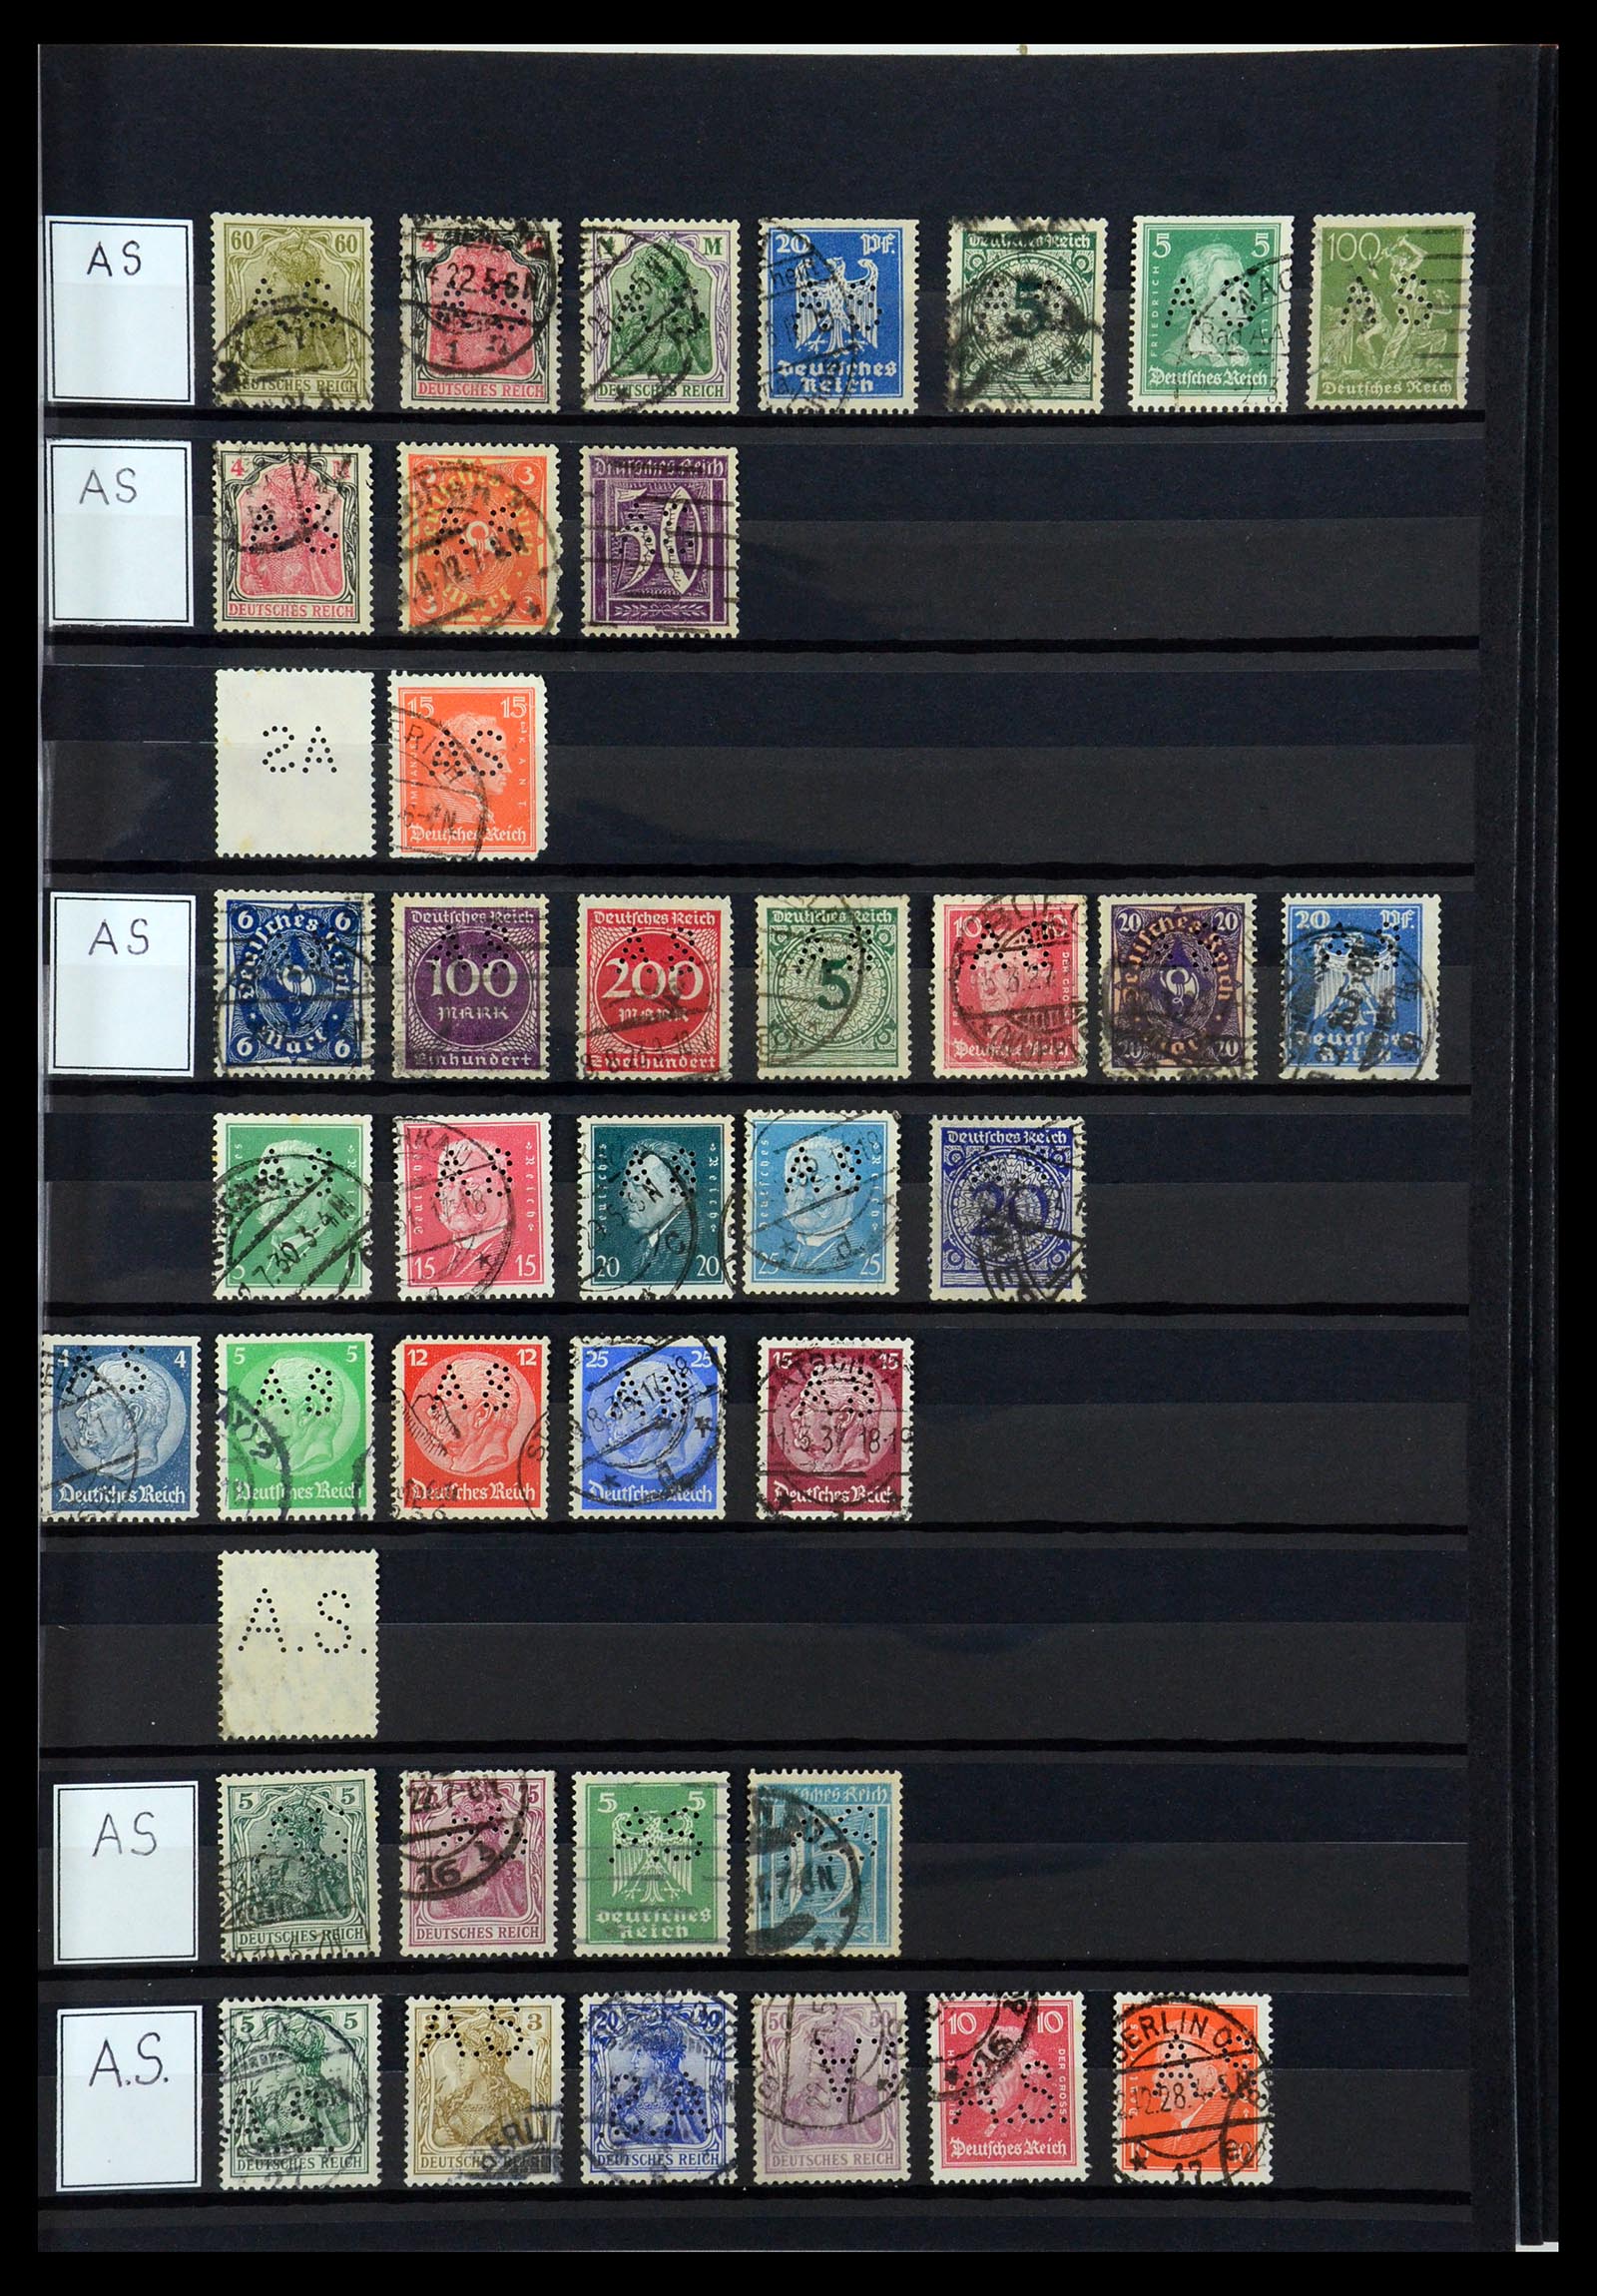 36405 025 - Stamp collection 36405 German Reich perfins 1880-1945.